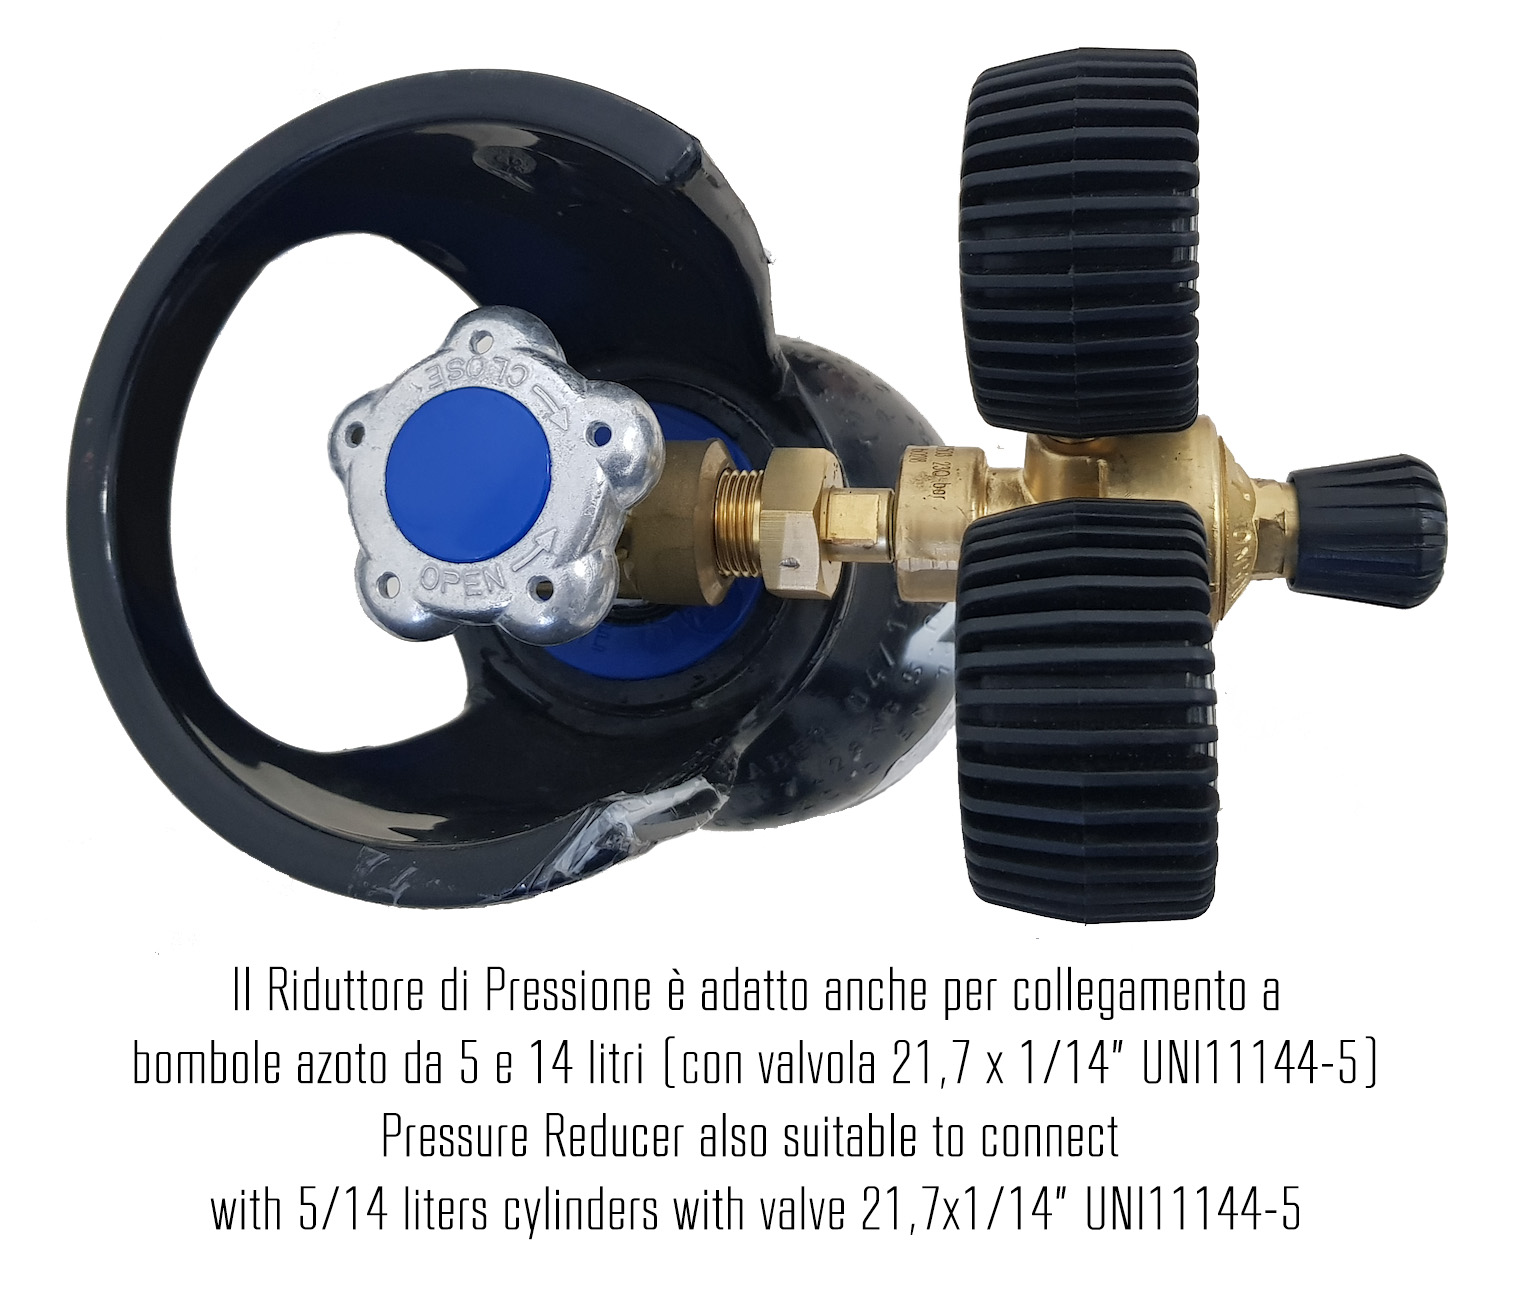 K-Leak Tester N2 - Kit cercafughe azoto per impianti Refrigerazione & A/C (adatto anche per collegamento a bombole industriali) - Foto 4